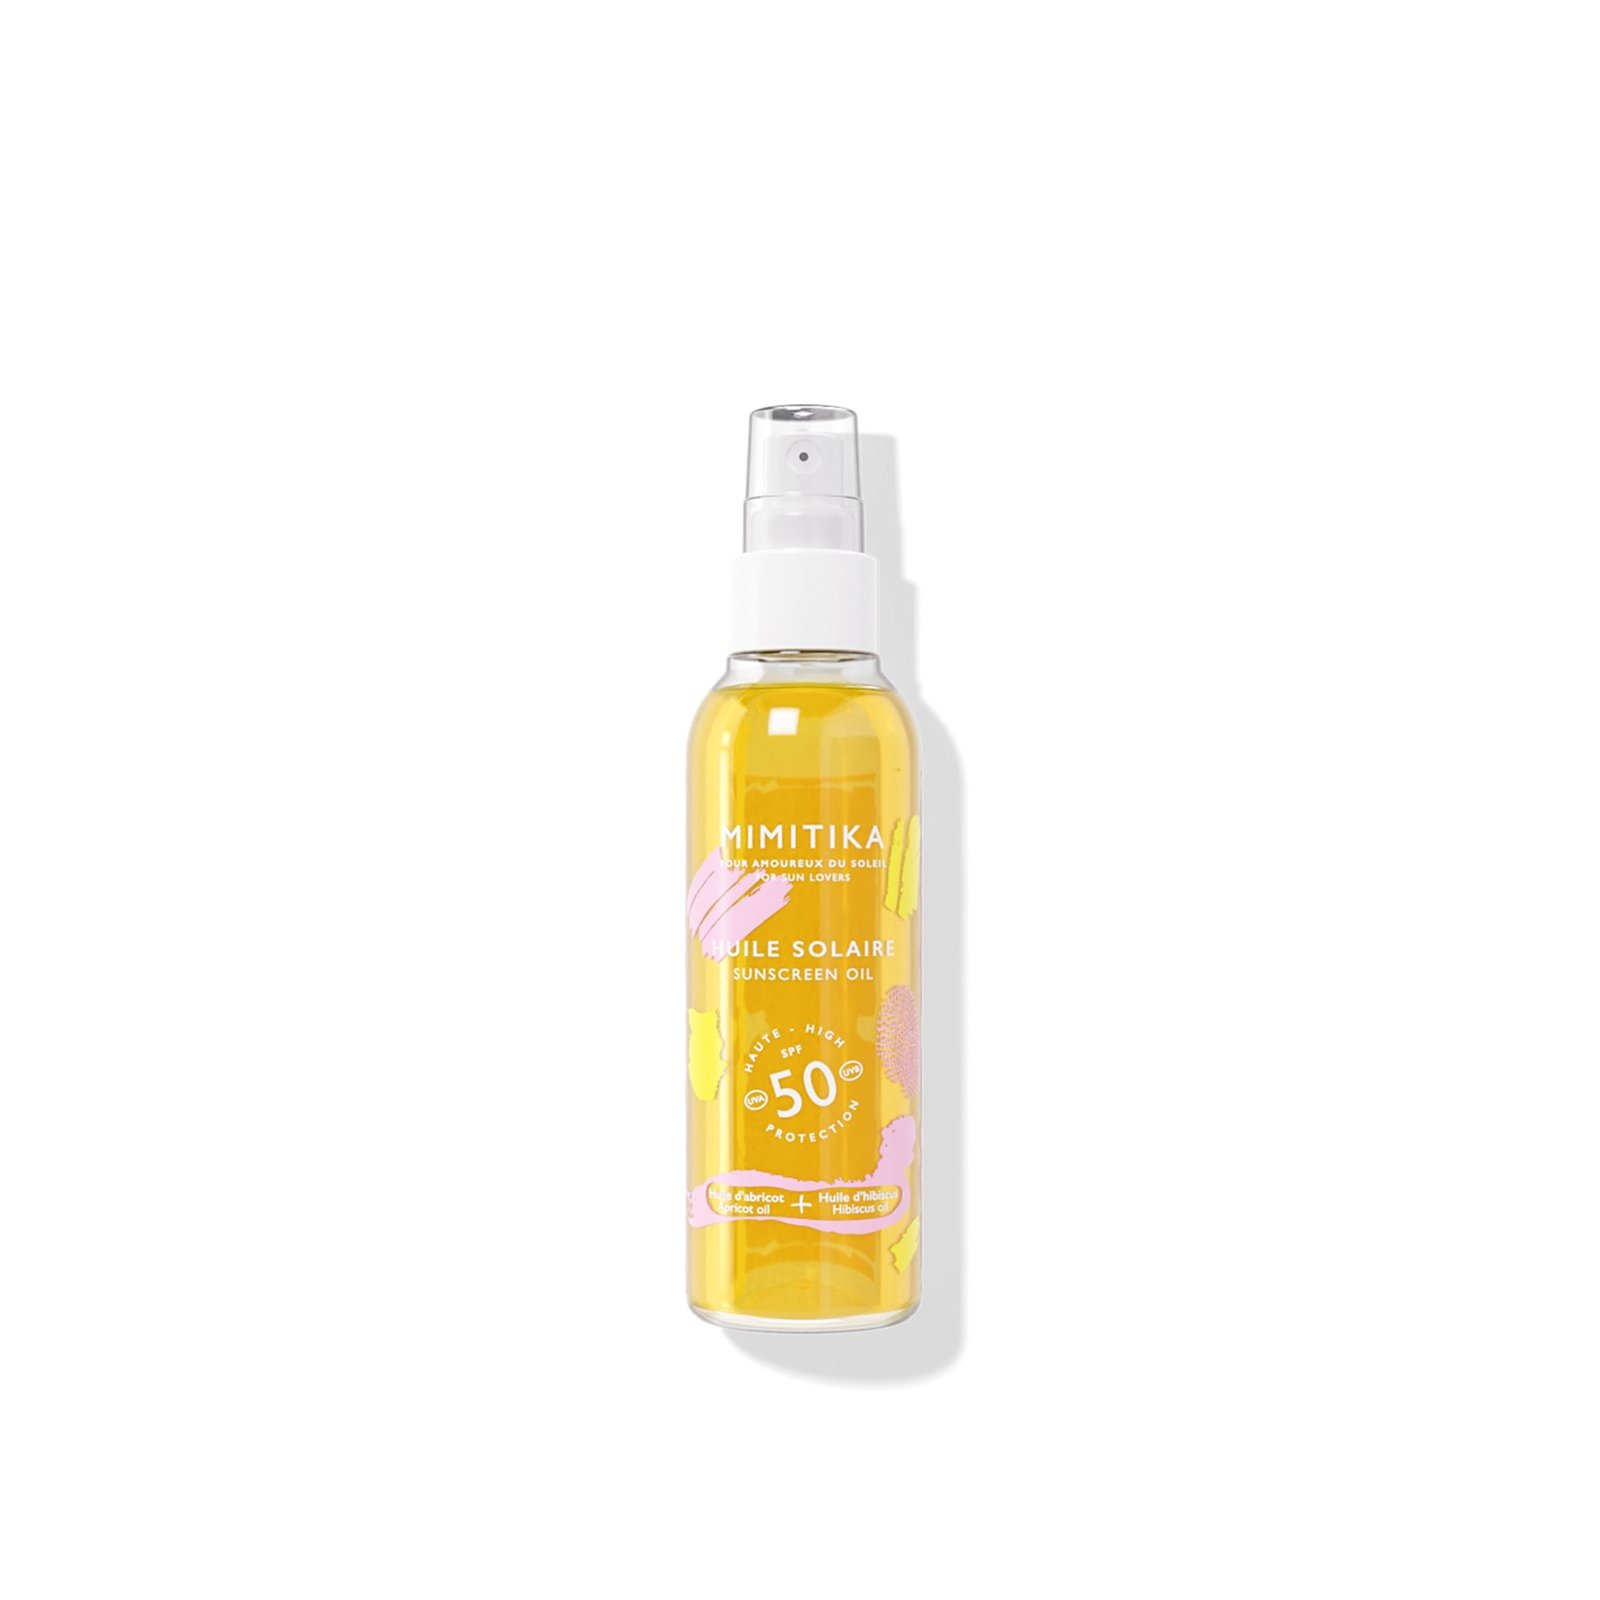 MIMITIKA Sunscreen Body Oil SPF50 150ml (5.1 fl oz)